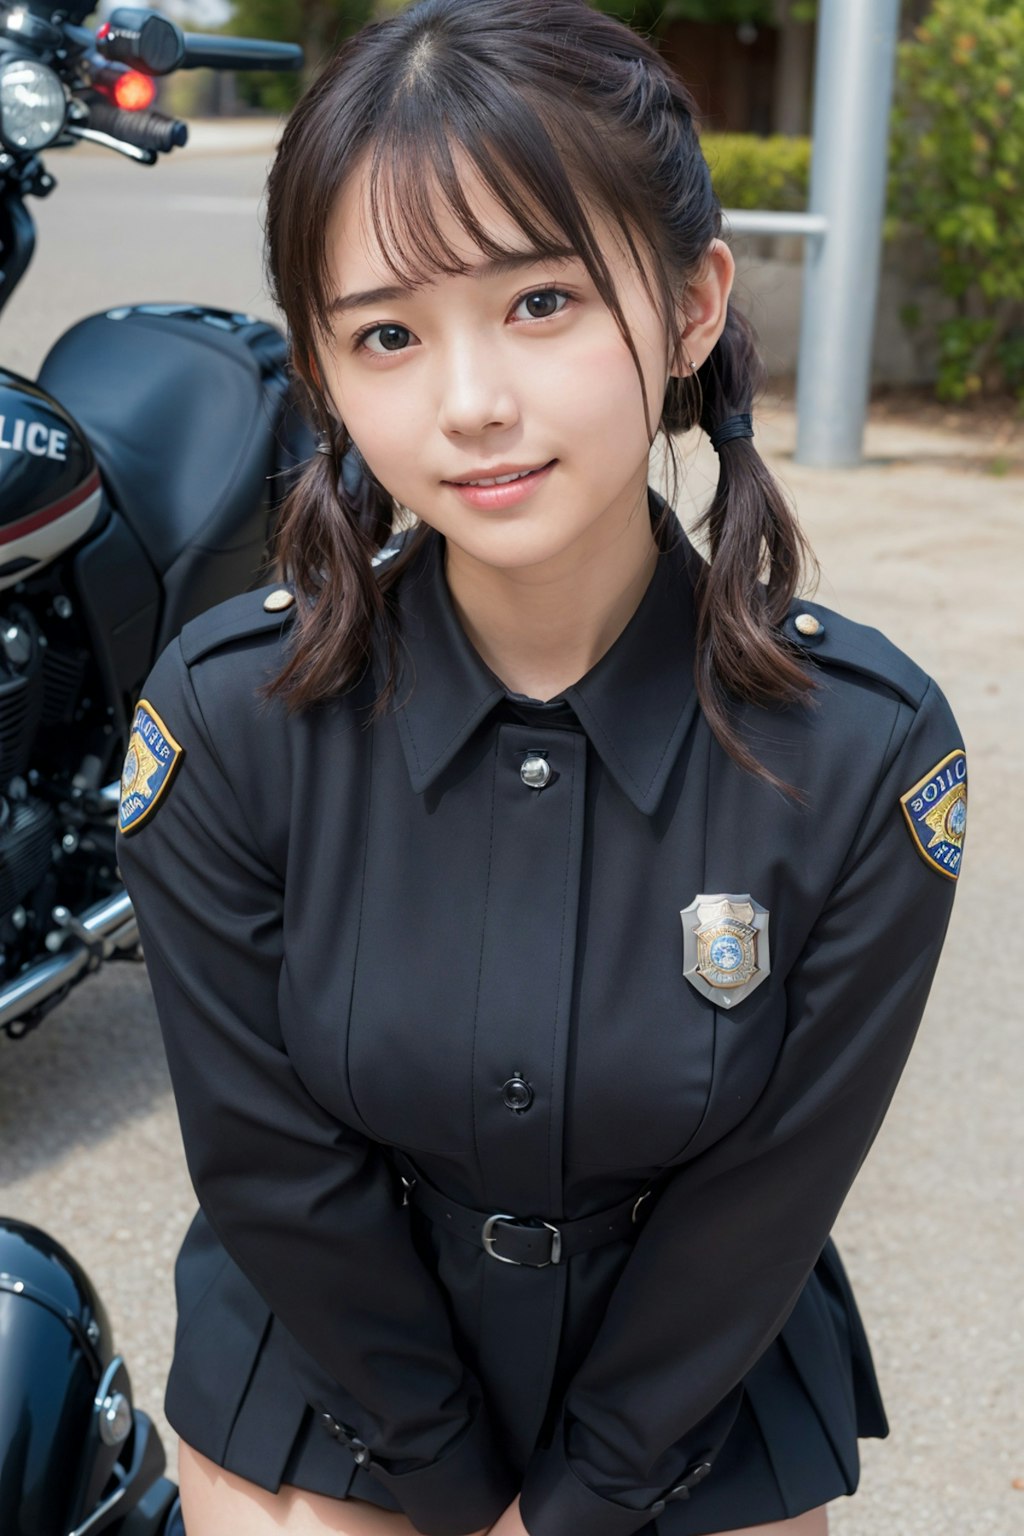 女性警察官 vol.5 バイク / ツインテール